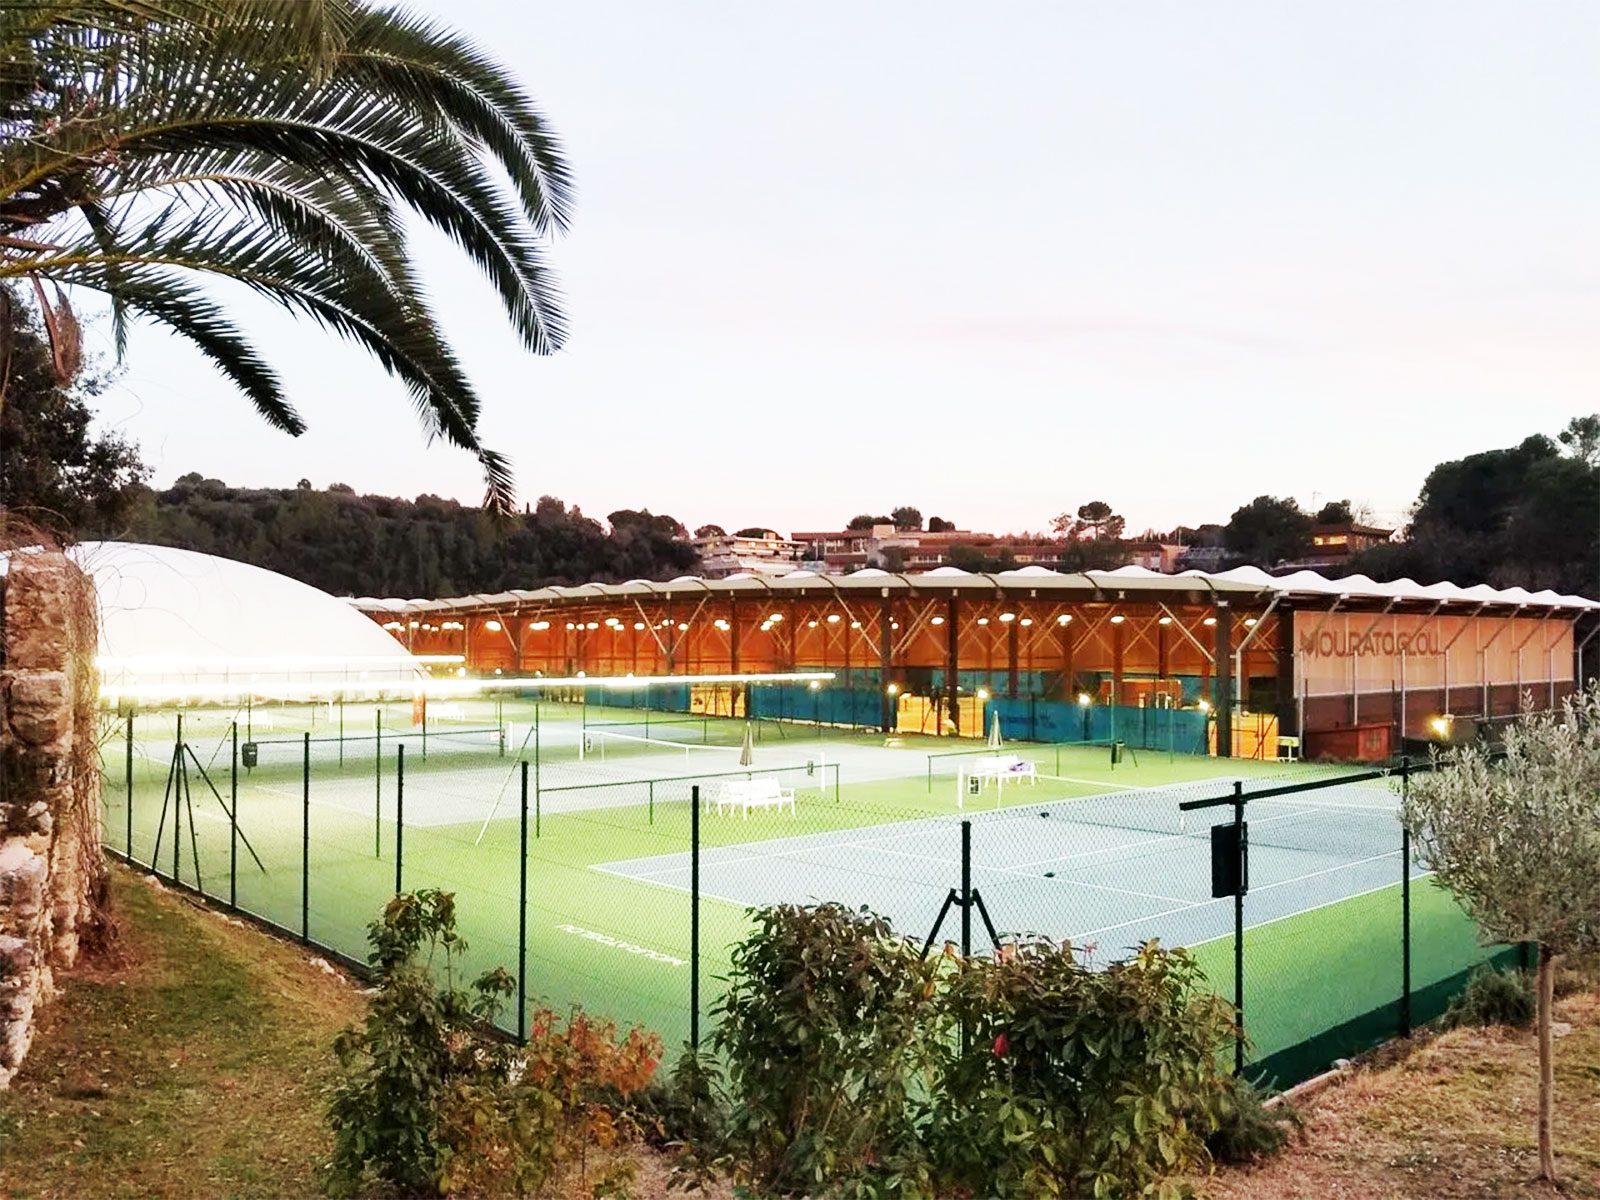 Tennis court With tweener lighting